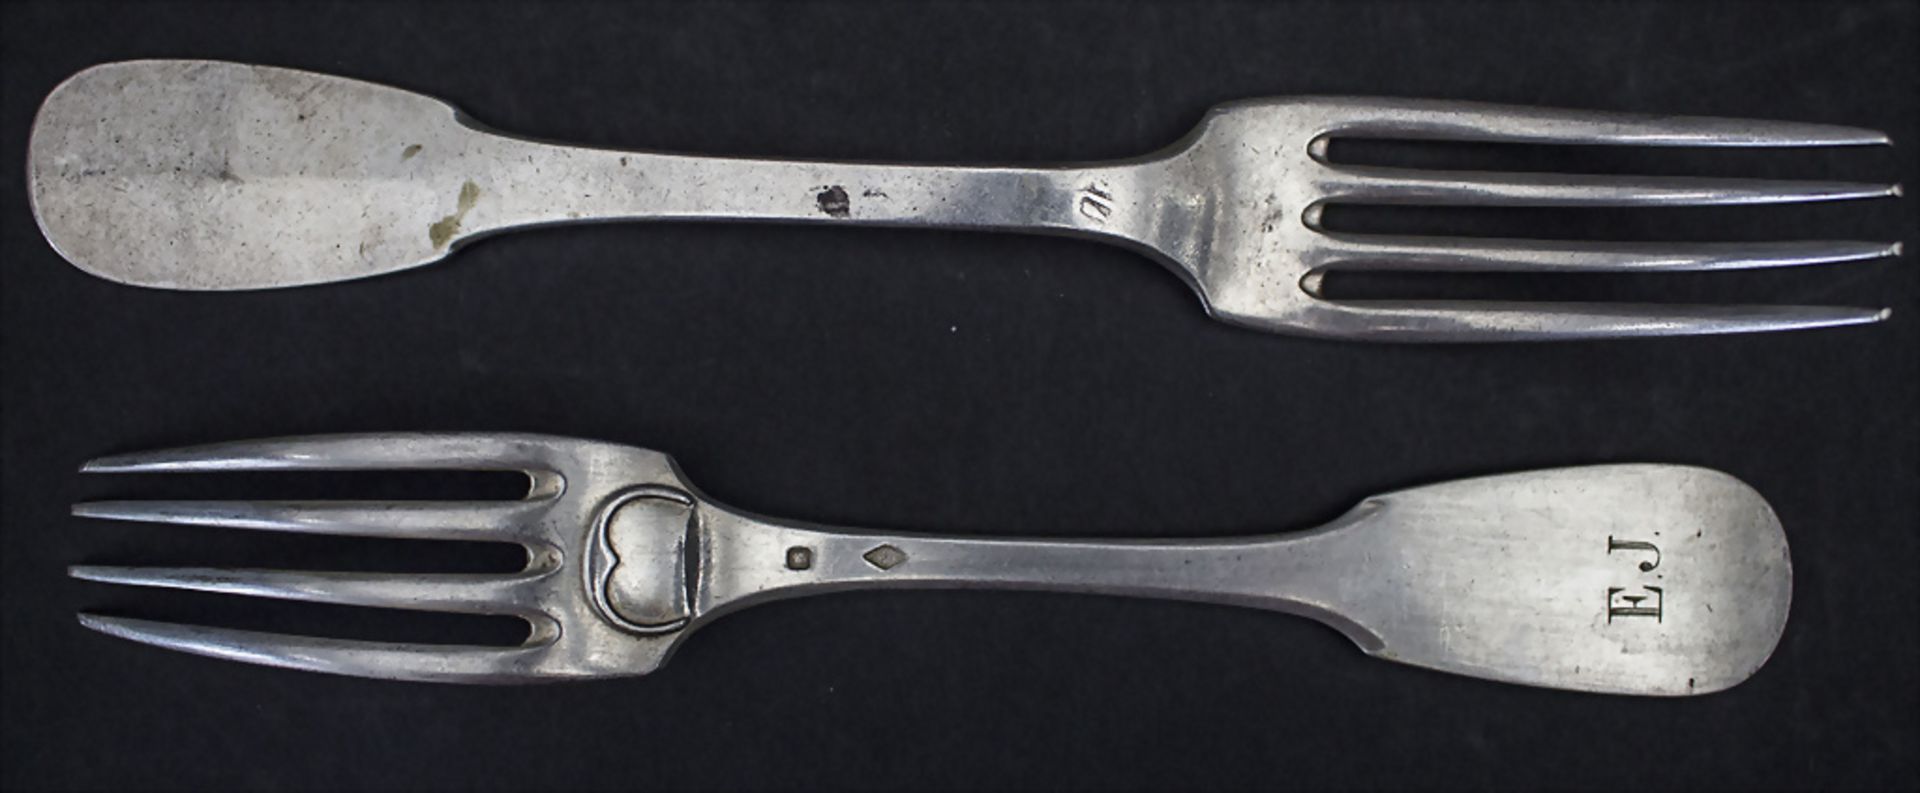 12-tlg. Silberbesteck / A 12-piece set of silver cutlery, Paris, nach 1839 - Bild 2 aus 7